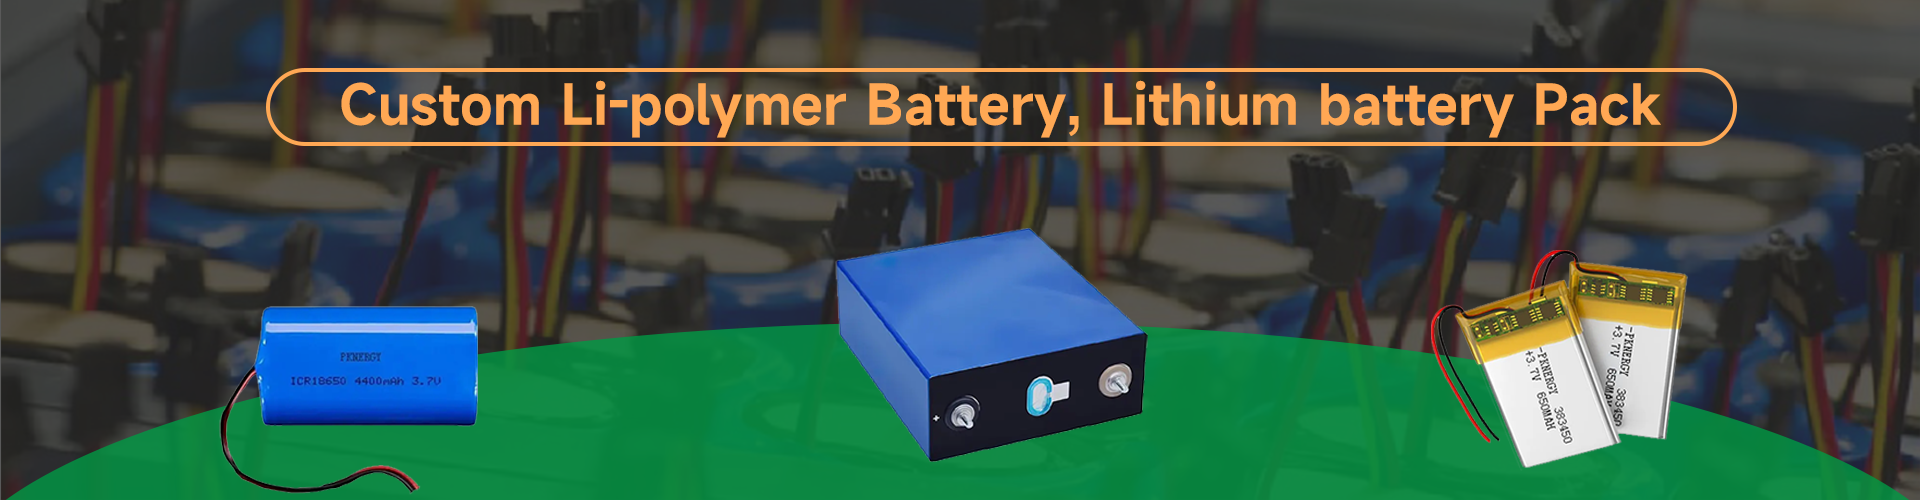 Bateri Li-Polymer Tersuai & Bateri Litium ion